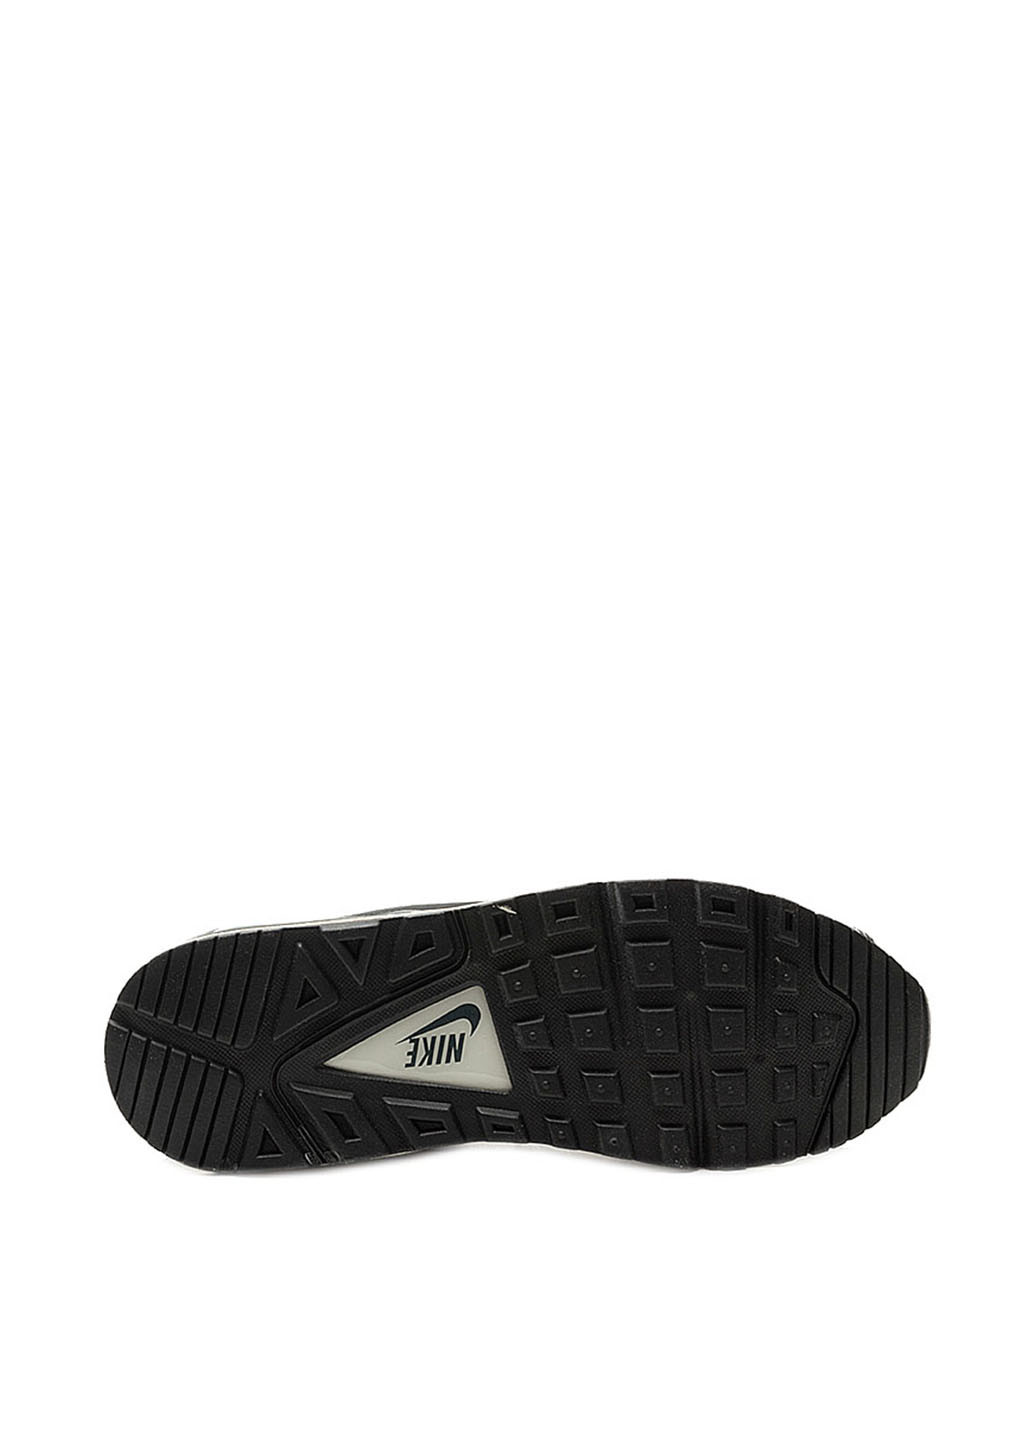 Черные всесезонные кроссовки Nike Air Max Command Leather